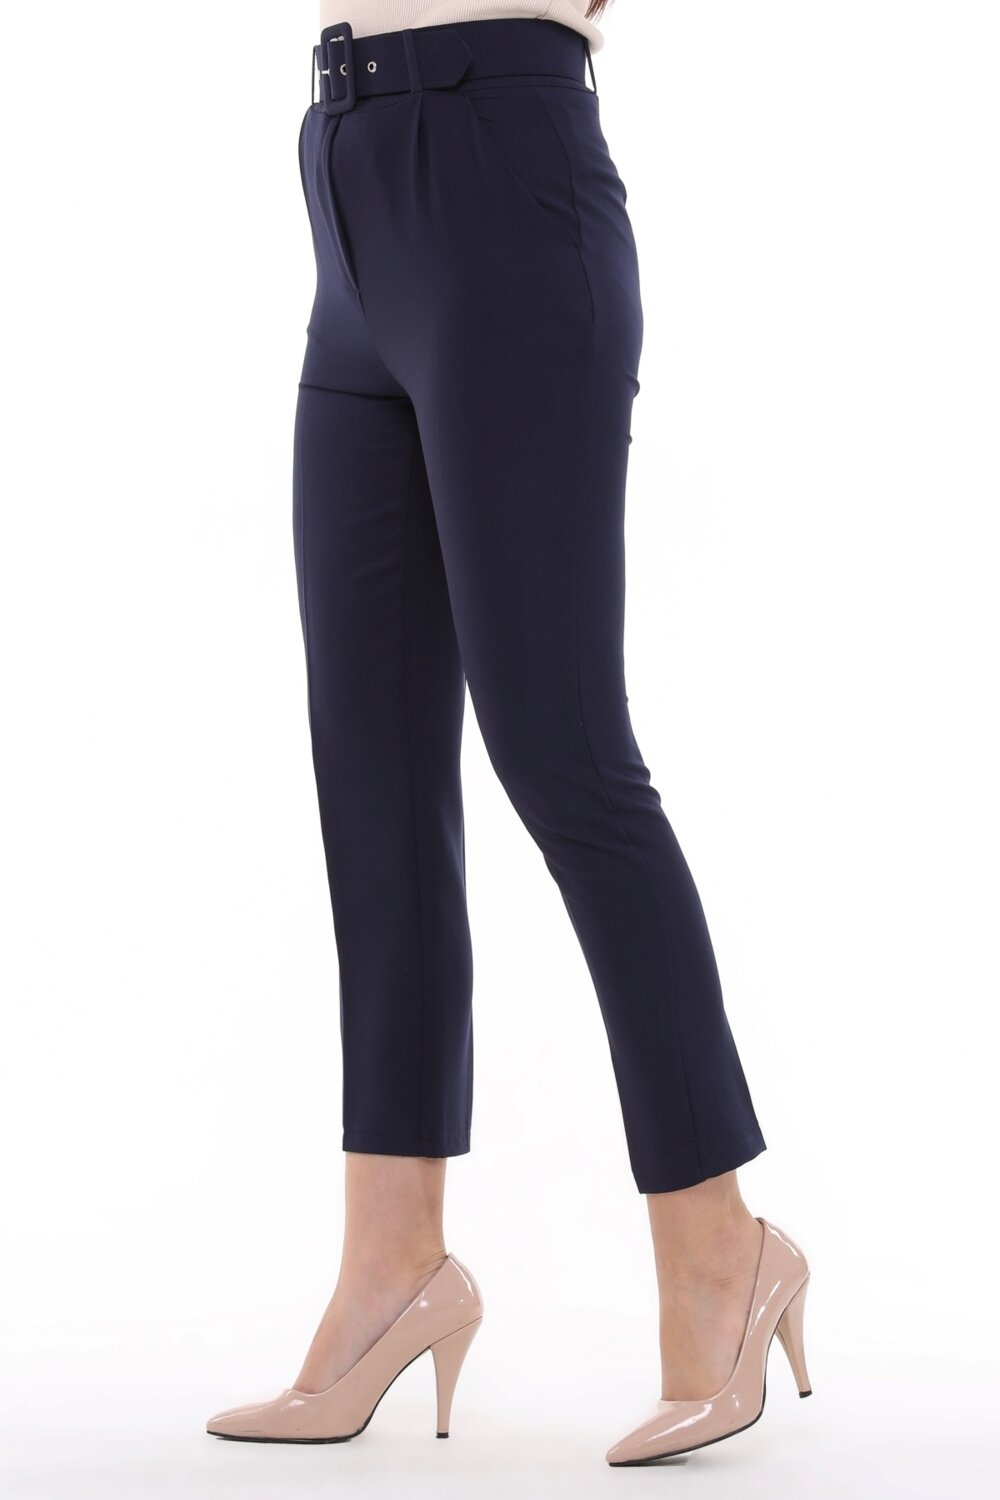 Женские брюки Cedy с высокой посадкой, на поясе, плиссированные, длиной до щиколотки, цвет бежевый, модель C3008.